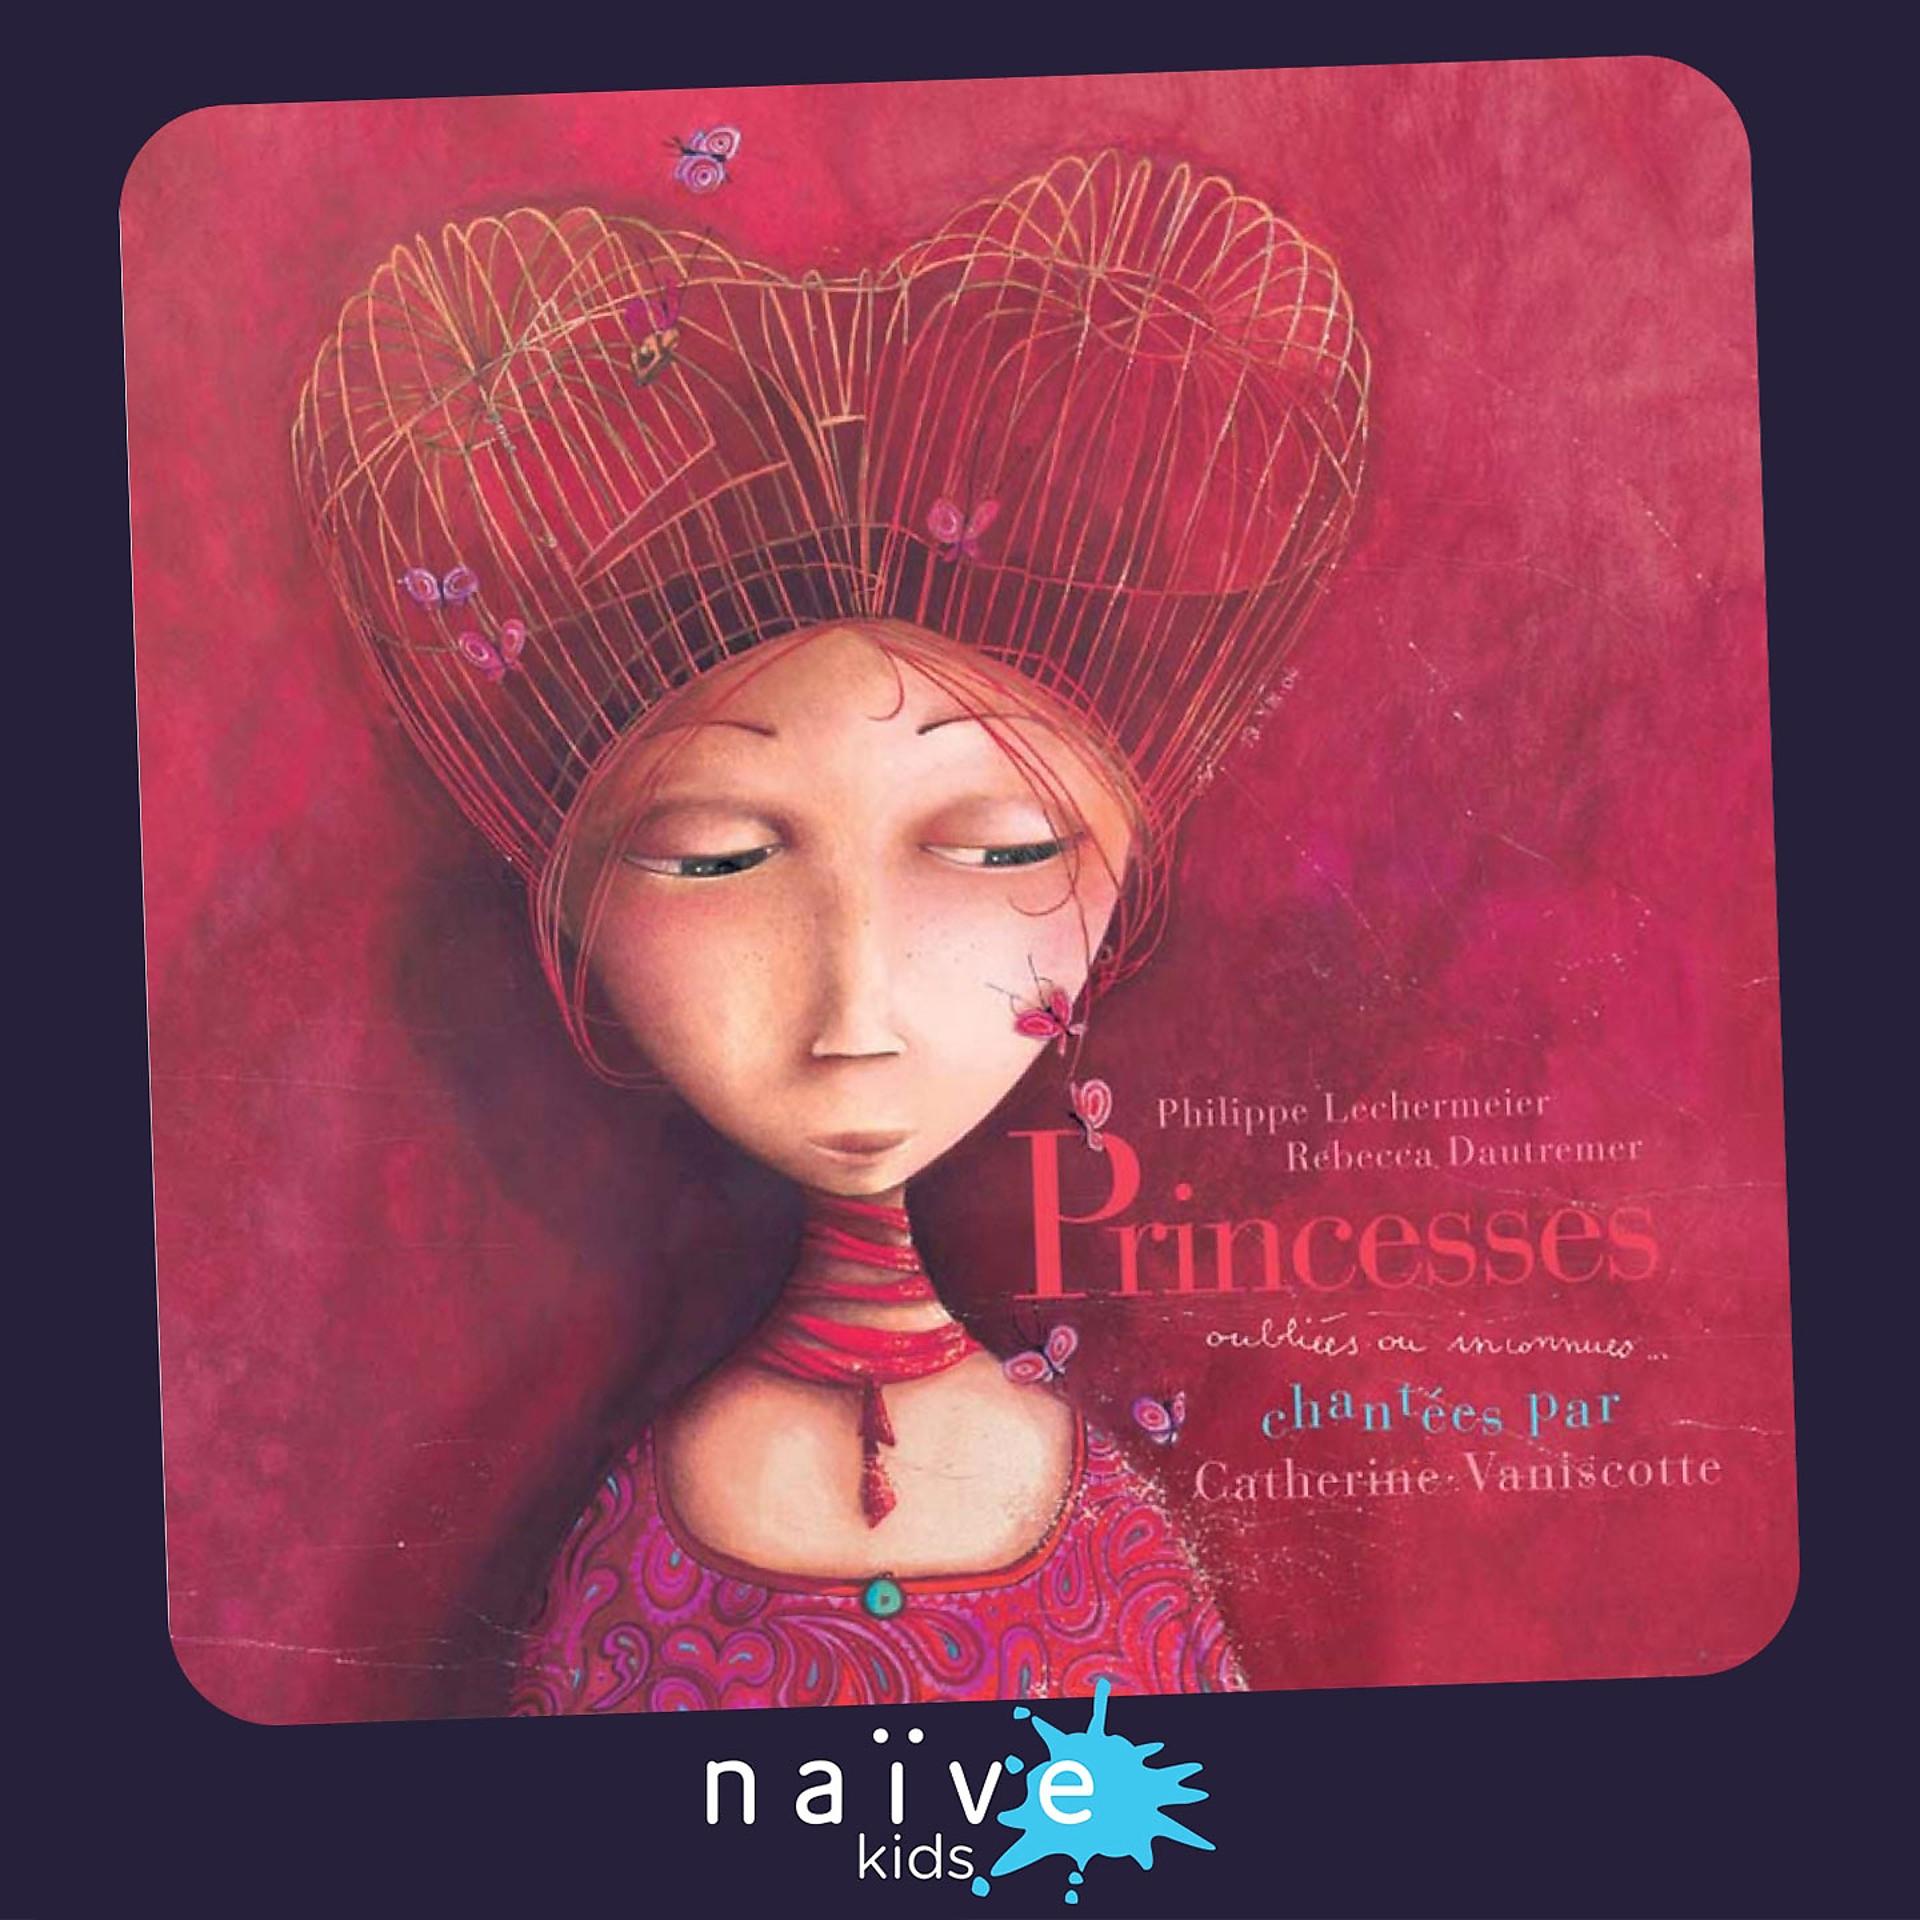 Постер альбома Les princesses oubliées ou inconnues